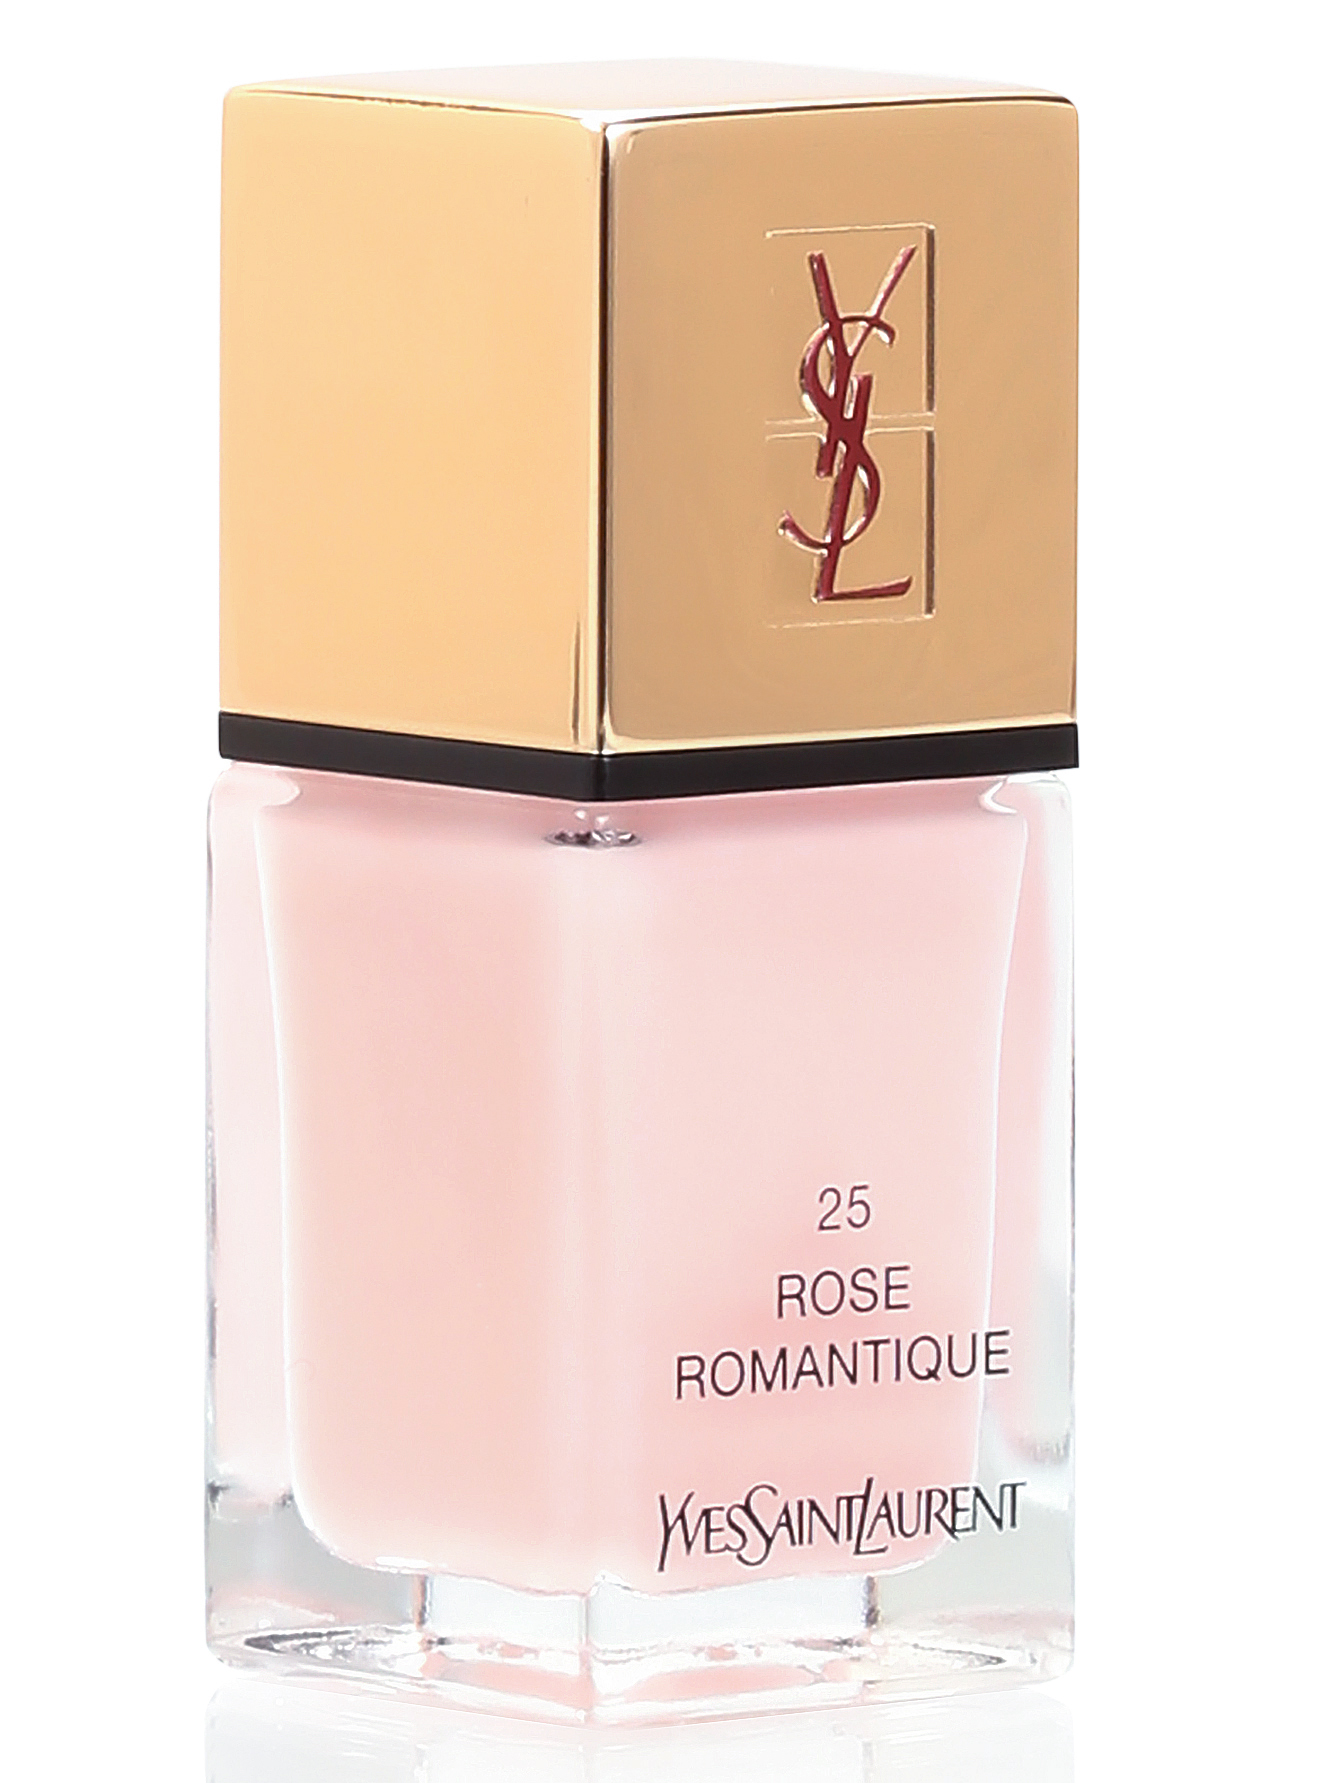 Лак для ногтей - №25 Rose romantique, La Laque Couture, 10ml - Общий вид